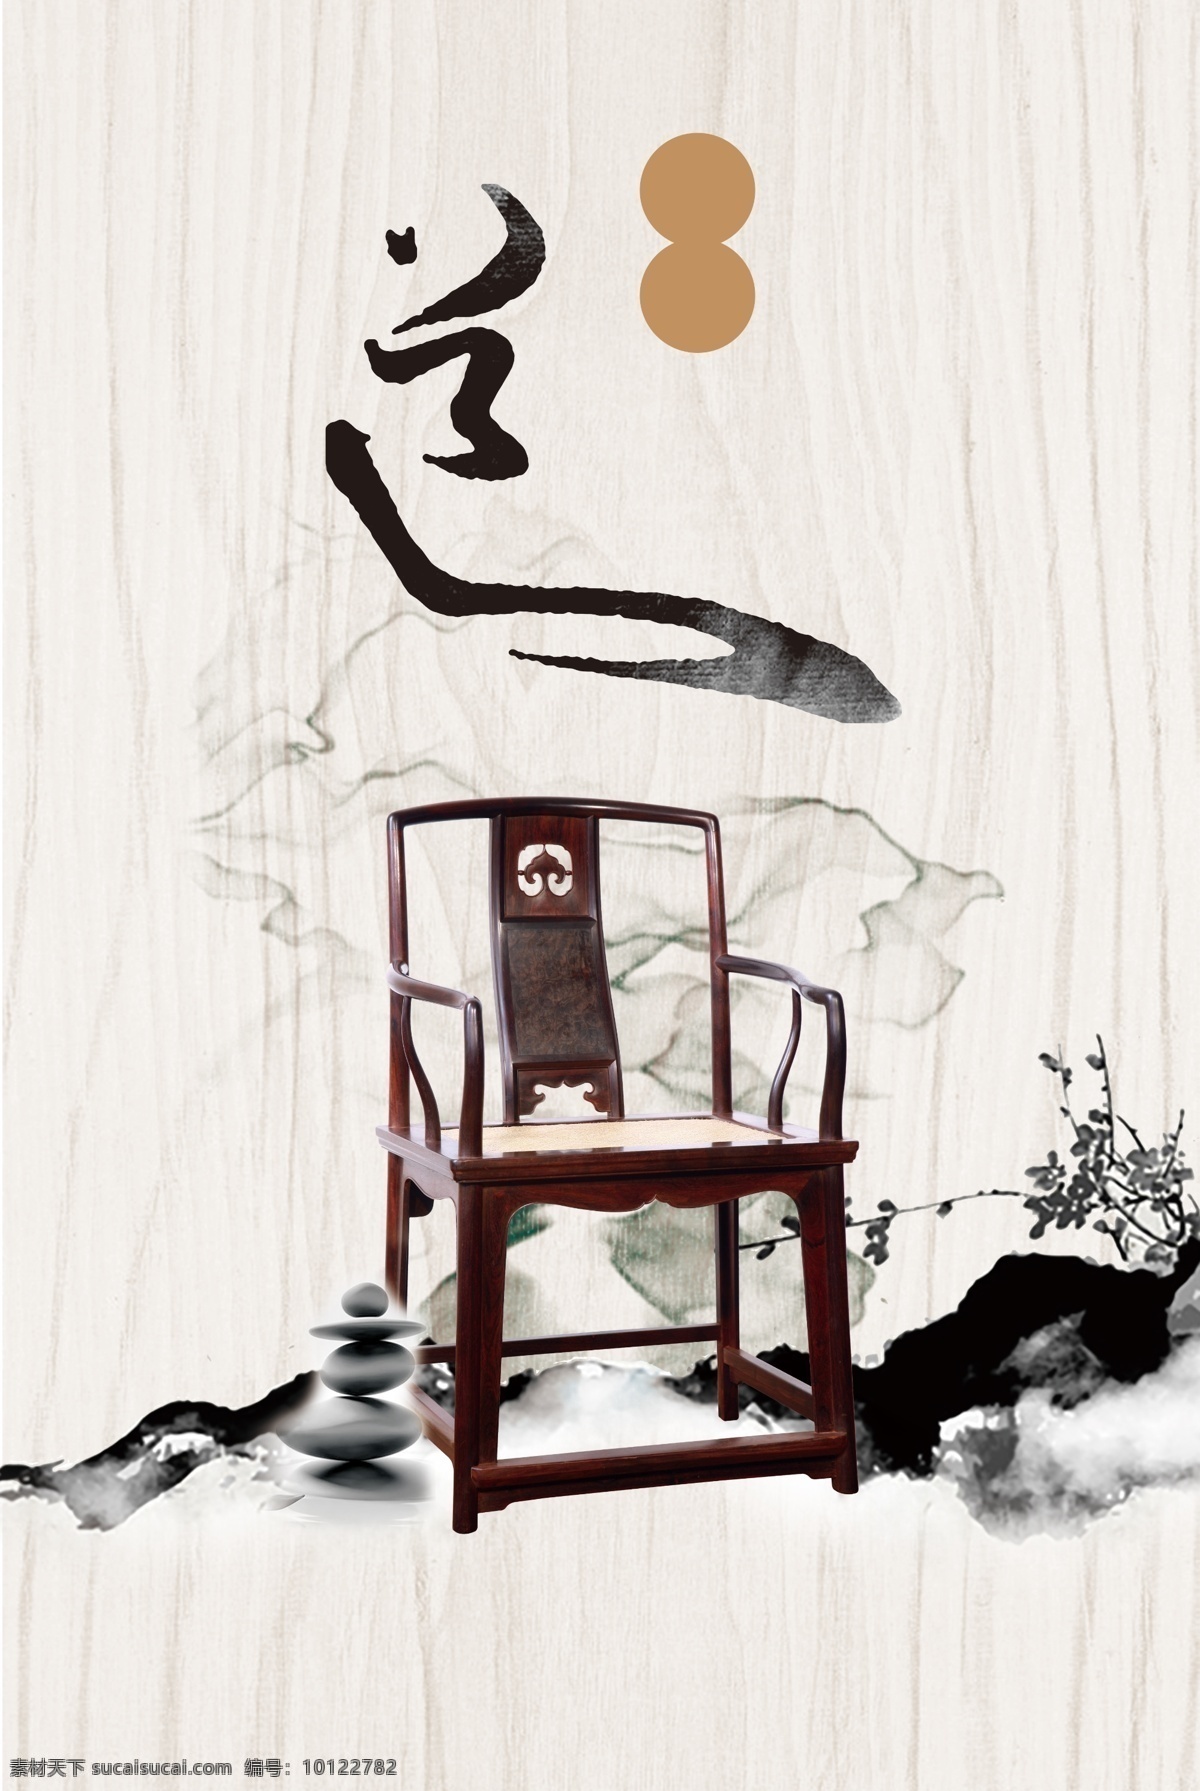 中国 风 文雅 木制 椅子 广告 背景 灰色背景 家具 中国风 树枝 广告背景 木椅子 笔墨